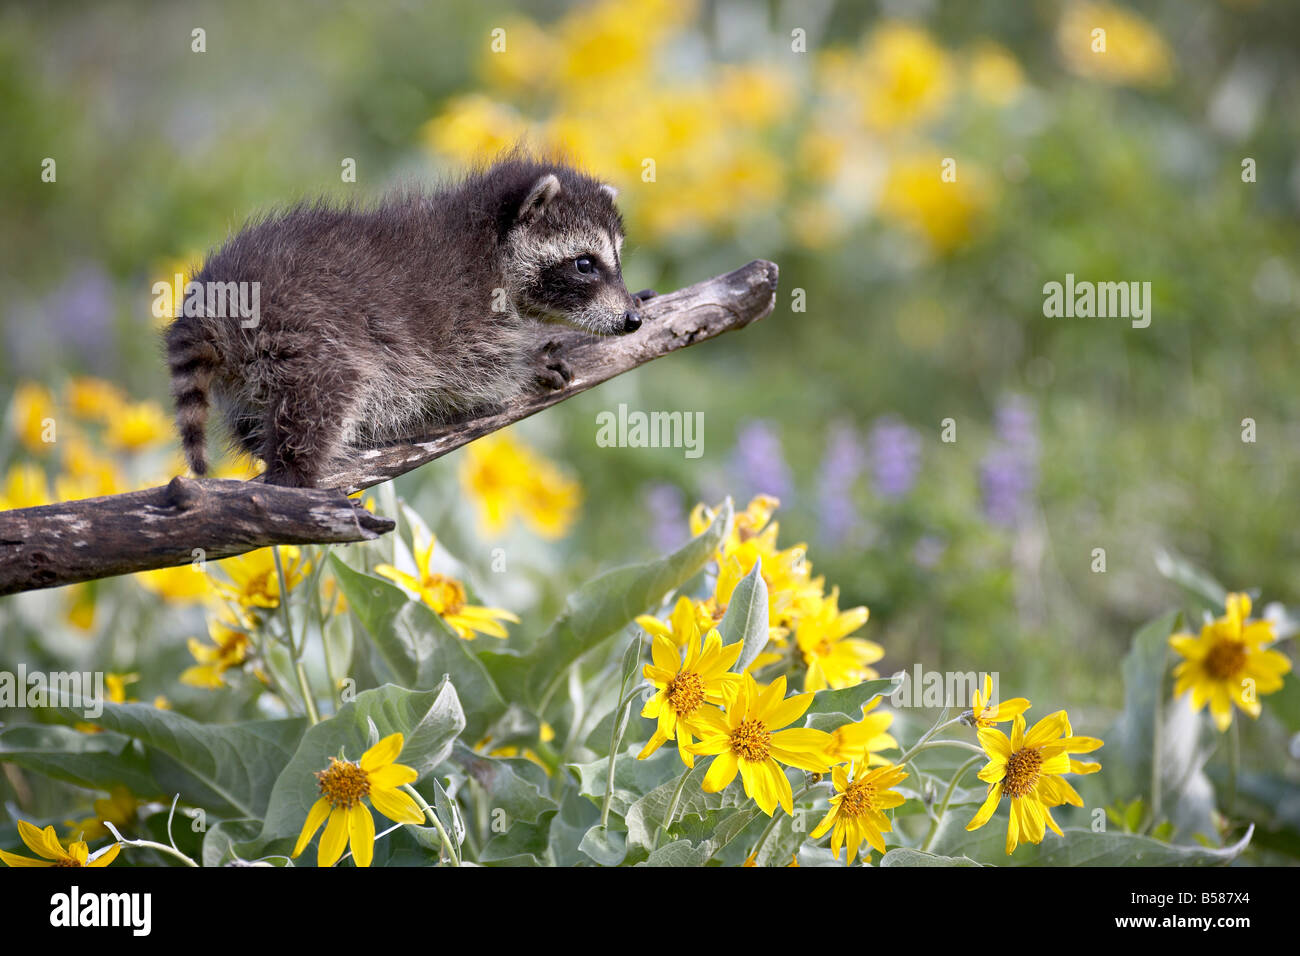 Baby raccoon (Procione lotor) in cattività, gli animali del Montana, Bozeman, Montana, Stati Uniti d'America, America del Nord Foto Stock